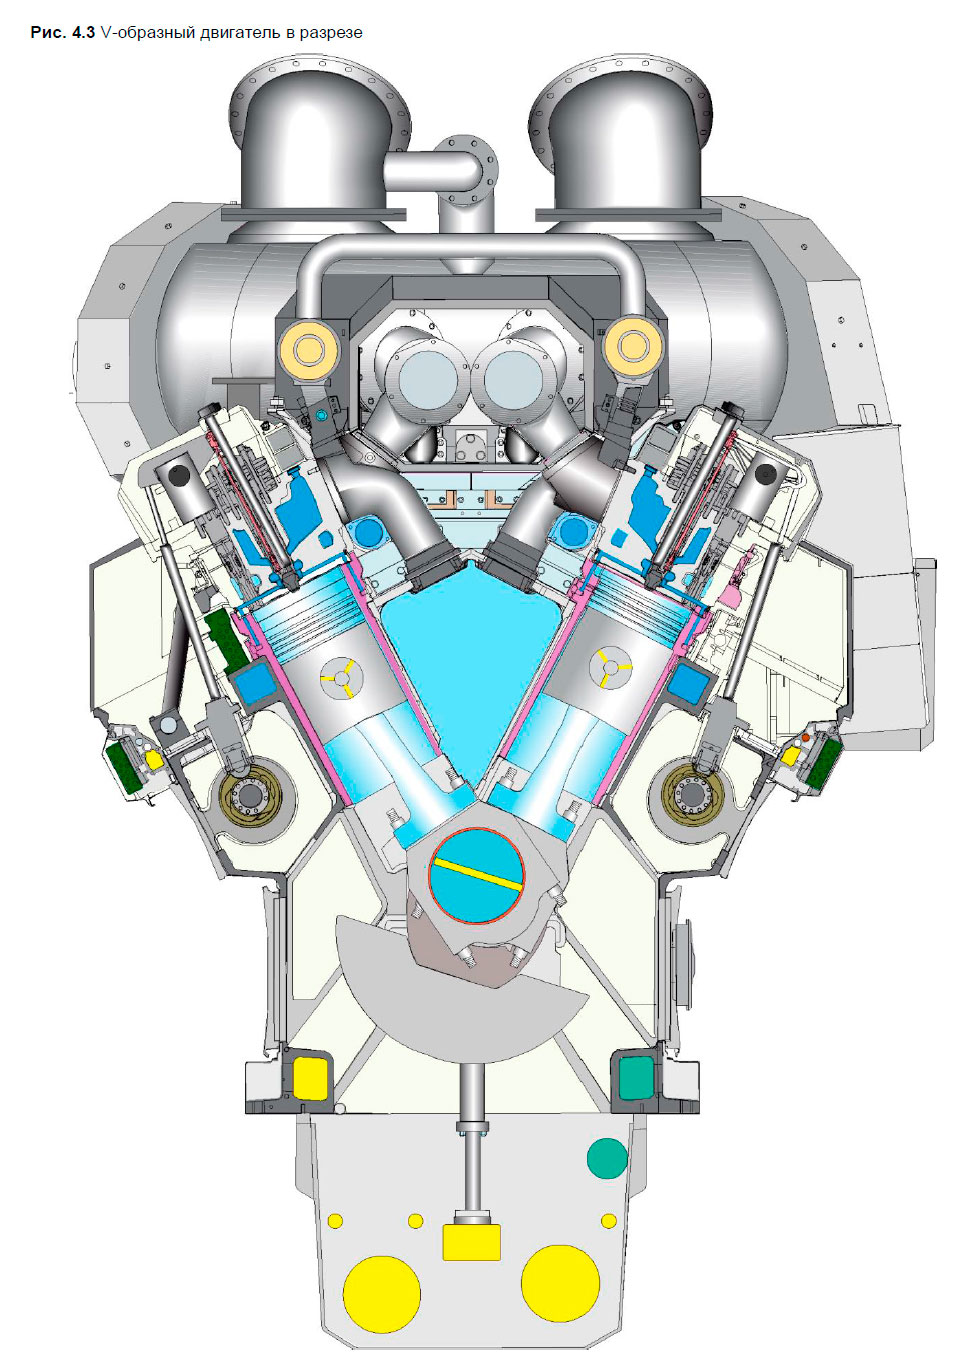 Wärtsilä 34DF V-образный двигатель в разрезе